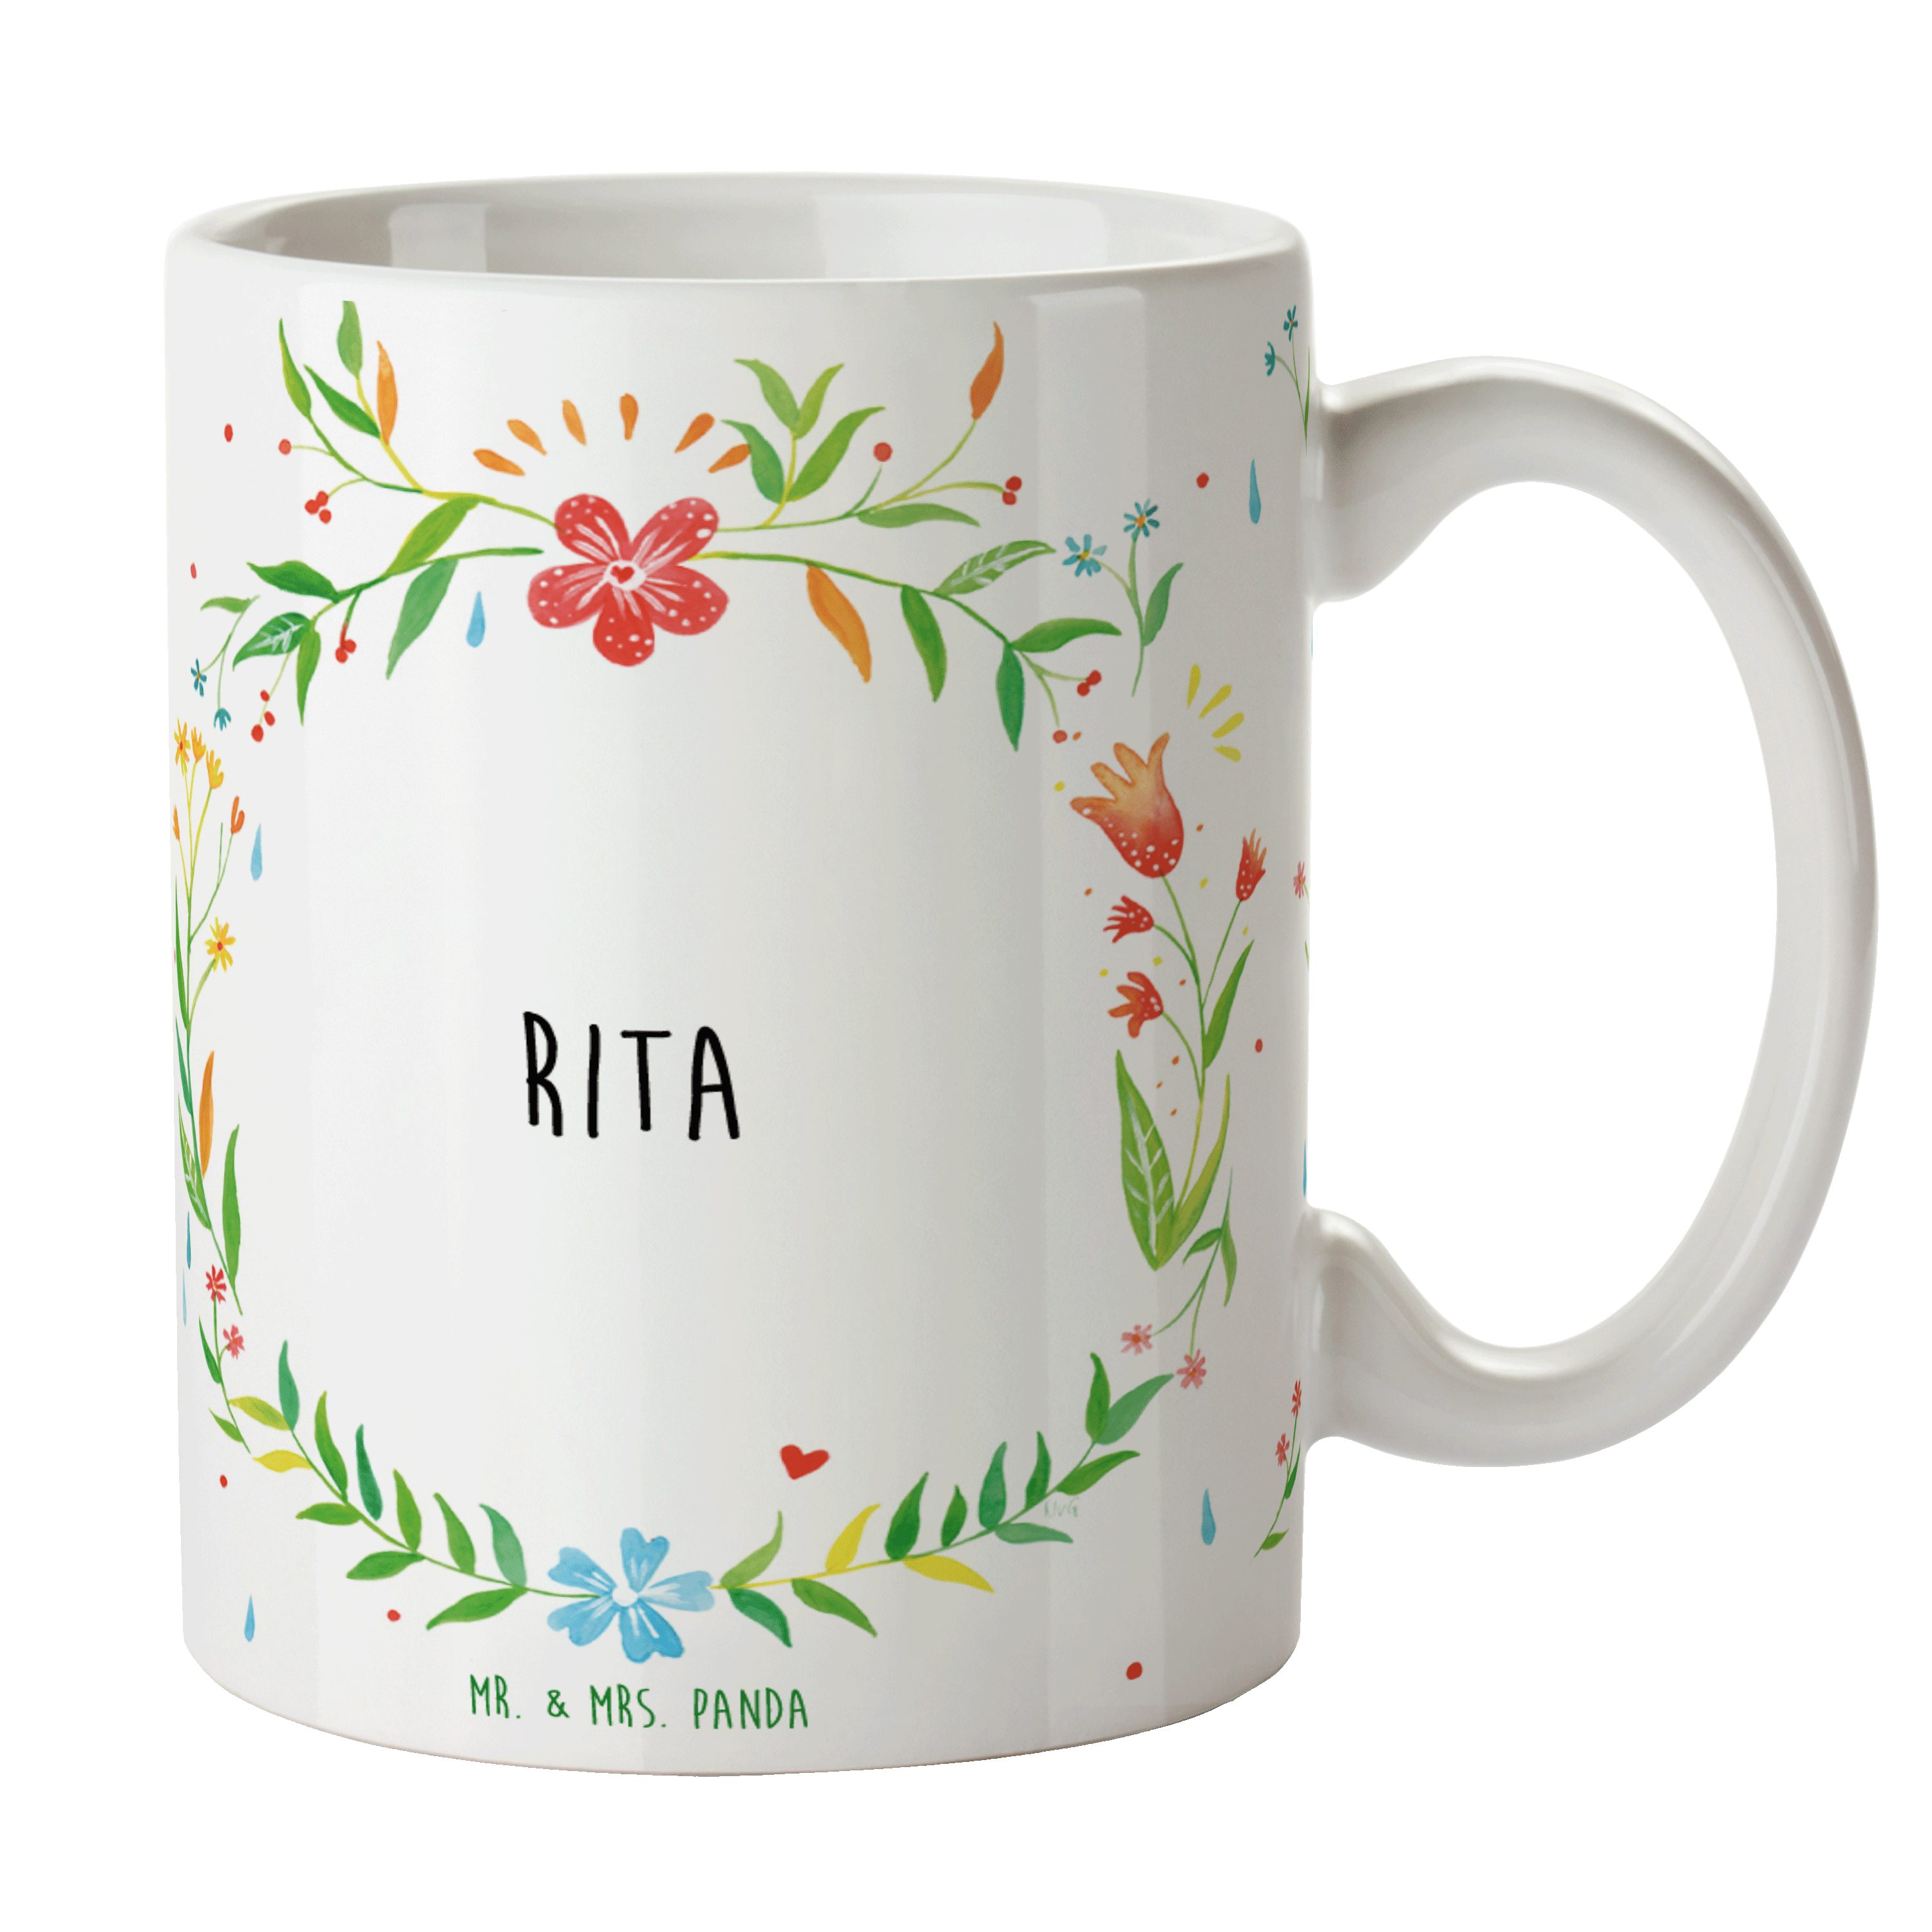 Mr. & Mrs. Panda Tasse Rita - Geschenk, Tasse, Keramiktasse, Porzellantasse, Kaffeebecher, B, Keramik